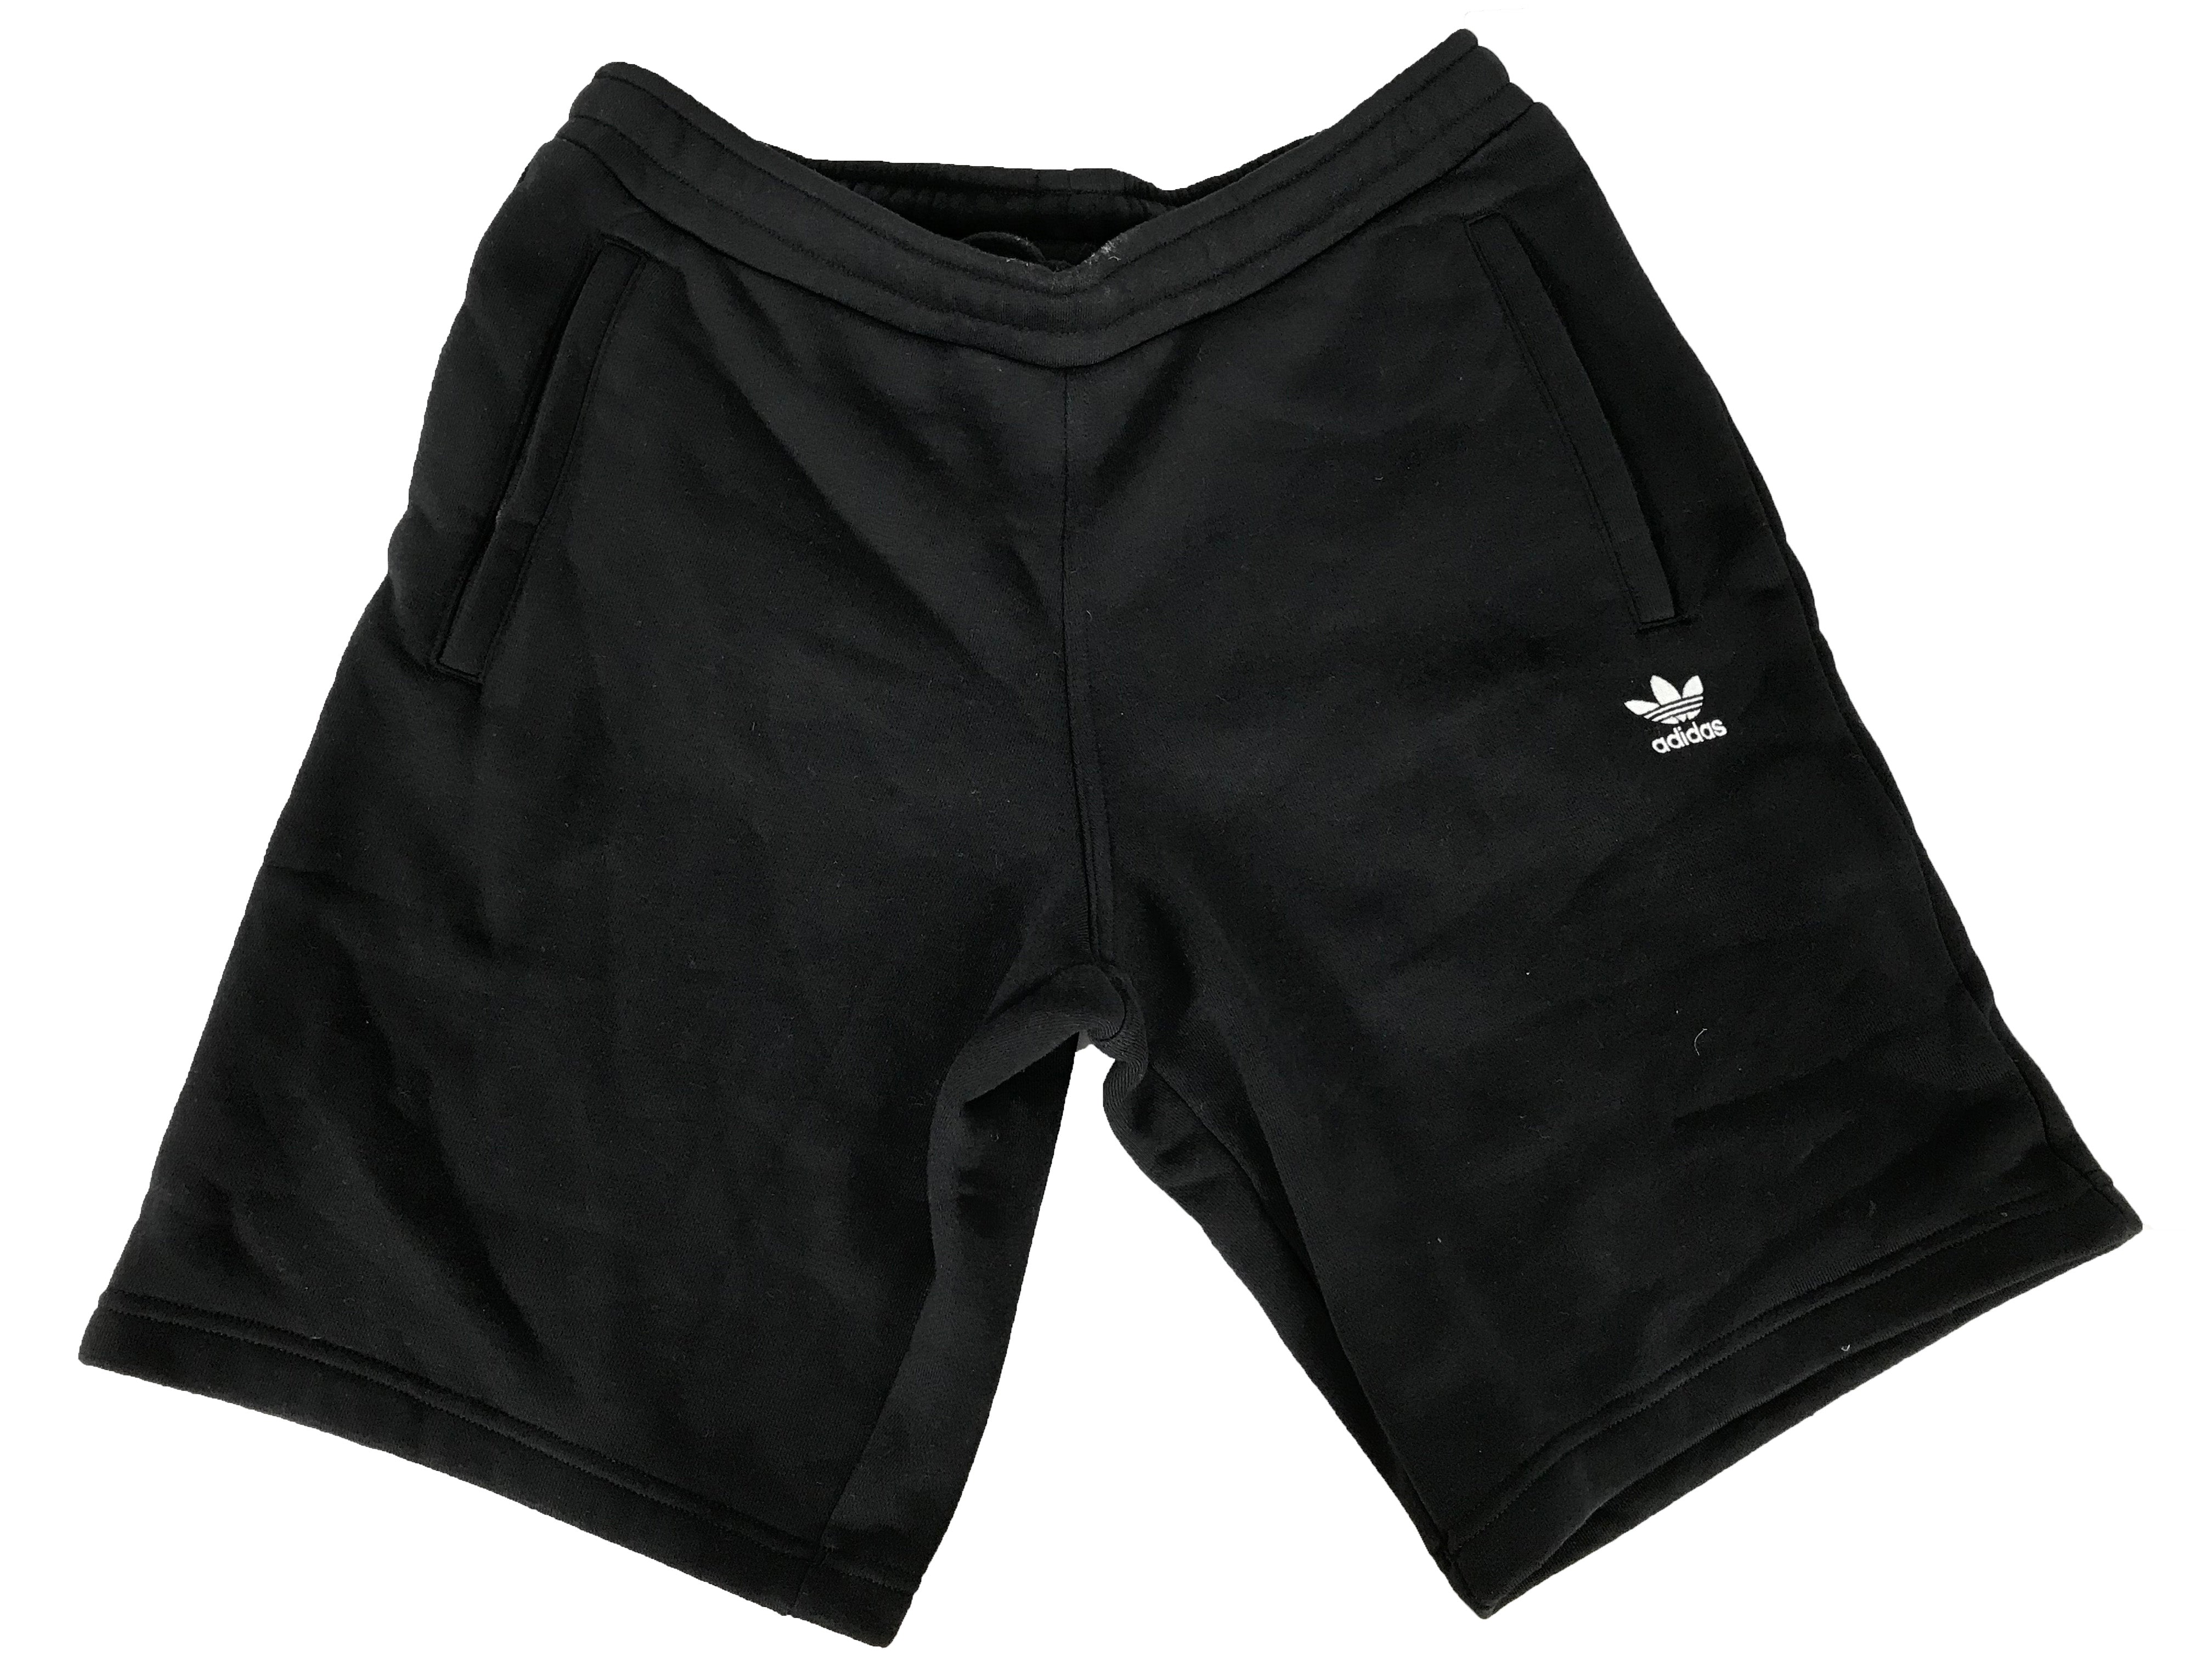 Adidas Black Shorts Men's Size Medium